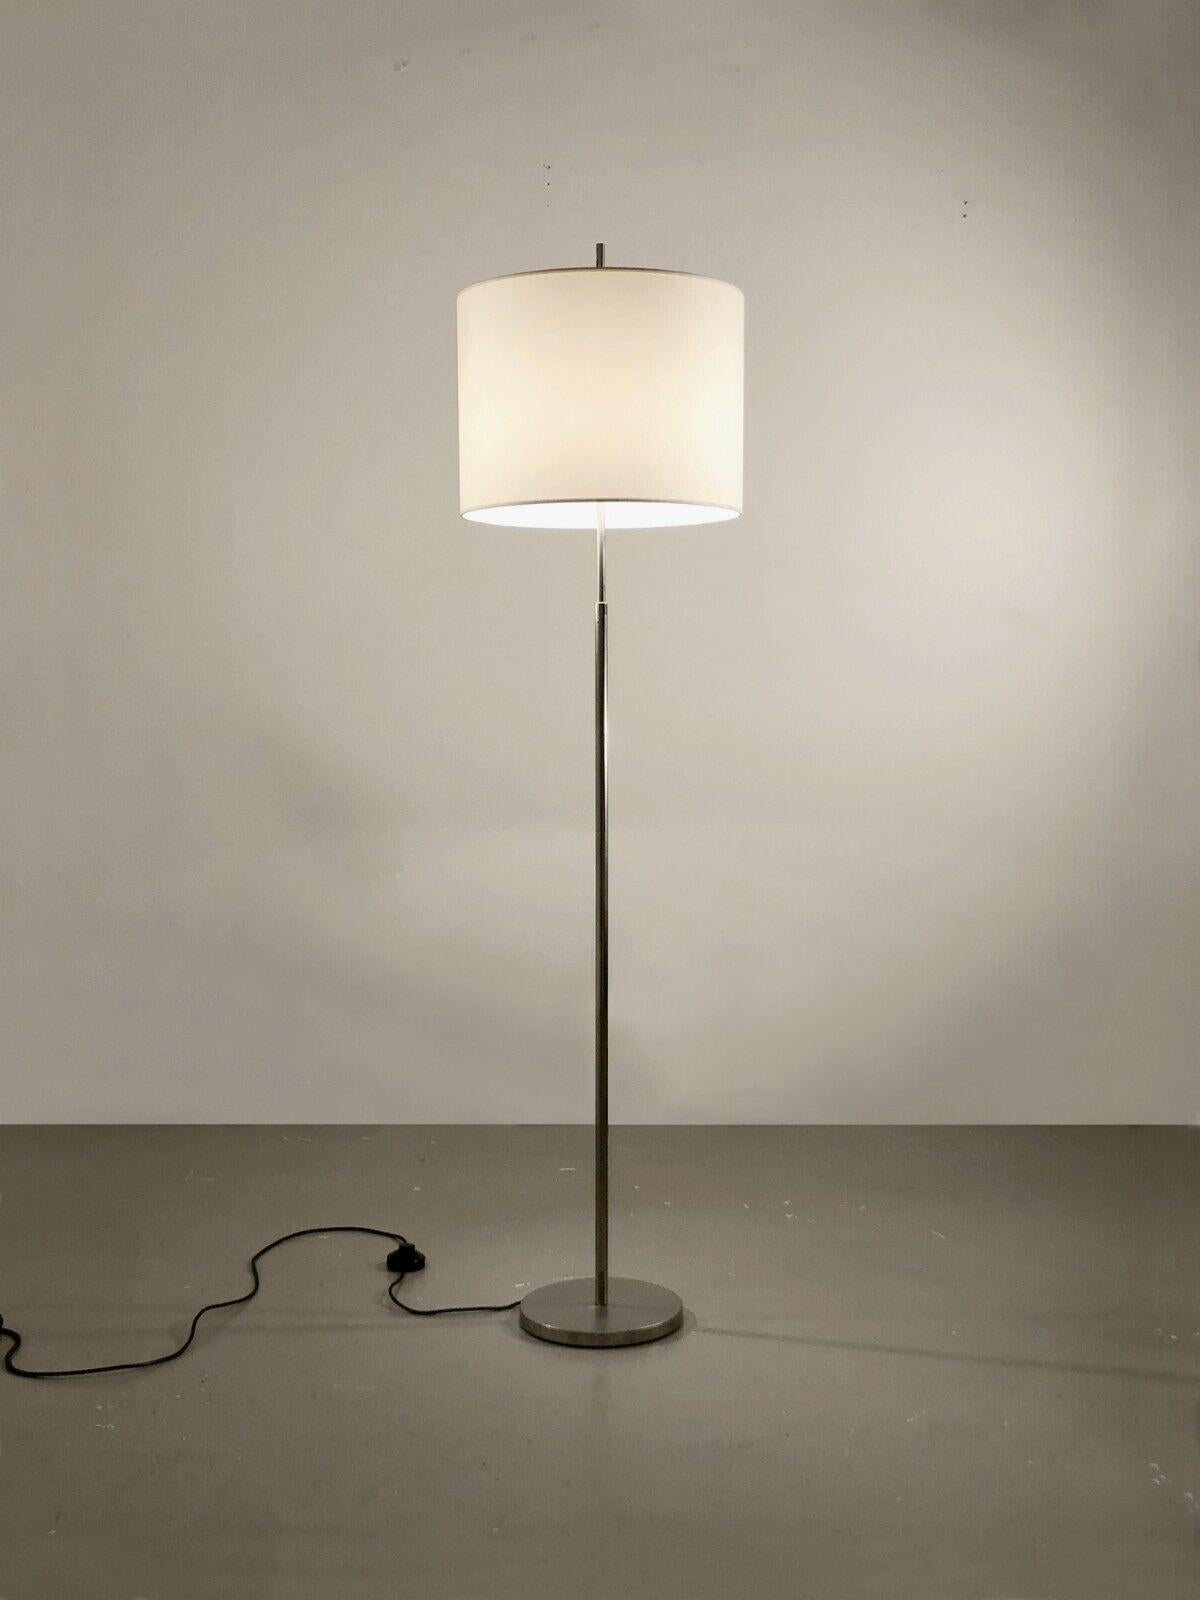 Rare lampadaire télescopique, par Giuseppe Ostuni & Forti, édition O-Luce, Italie 1970. 
Ce lampadaire est à la fois minimaliste, moderniste et NO AGE. Sa base est lestée et circulaire et son axe vertical est en acier nickelé ; son abat-jour est